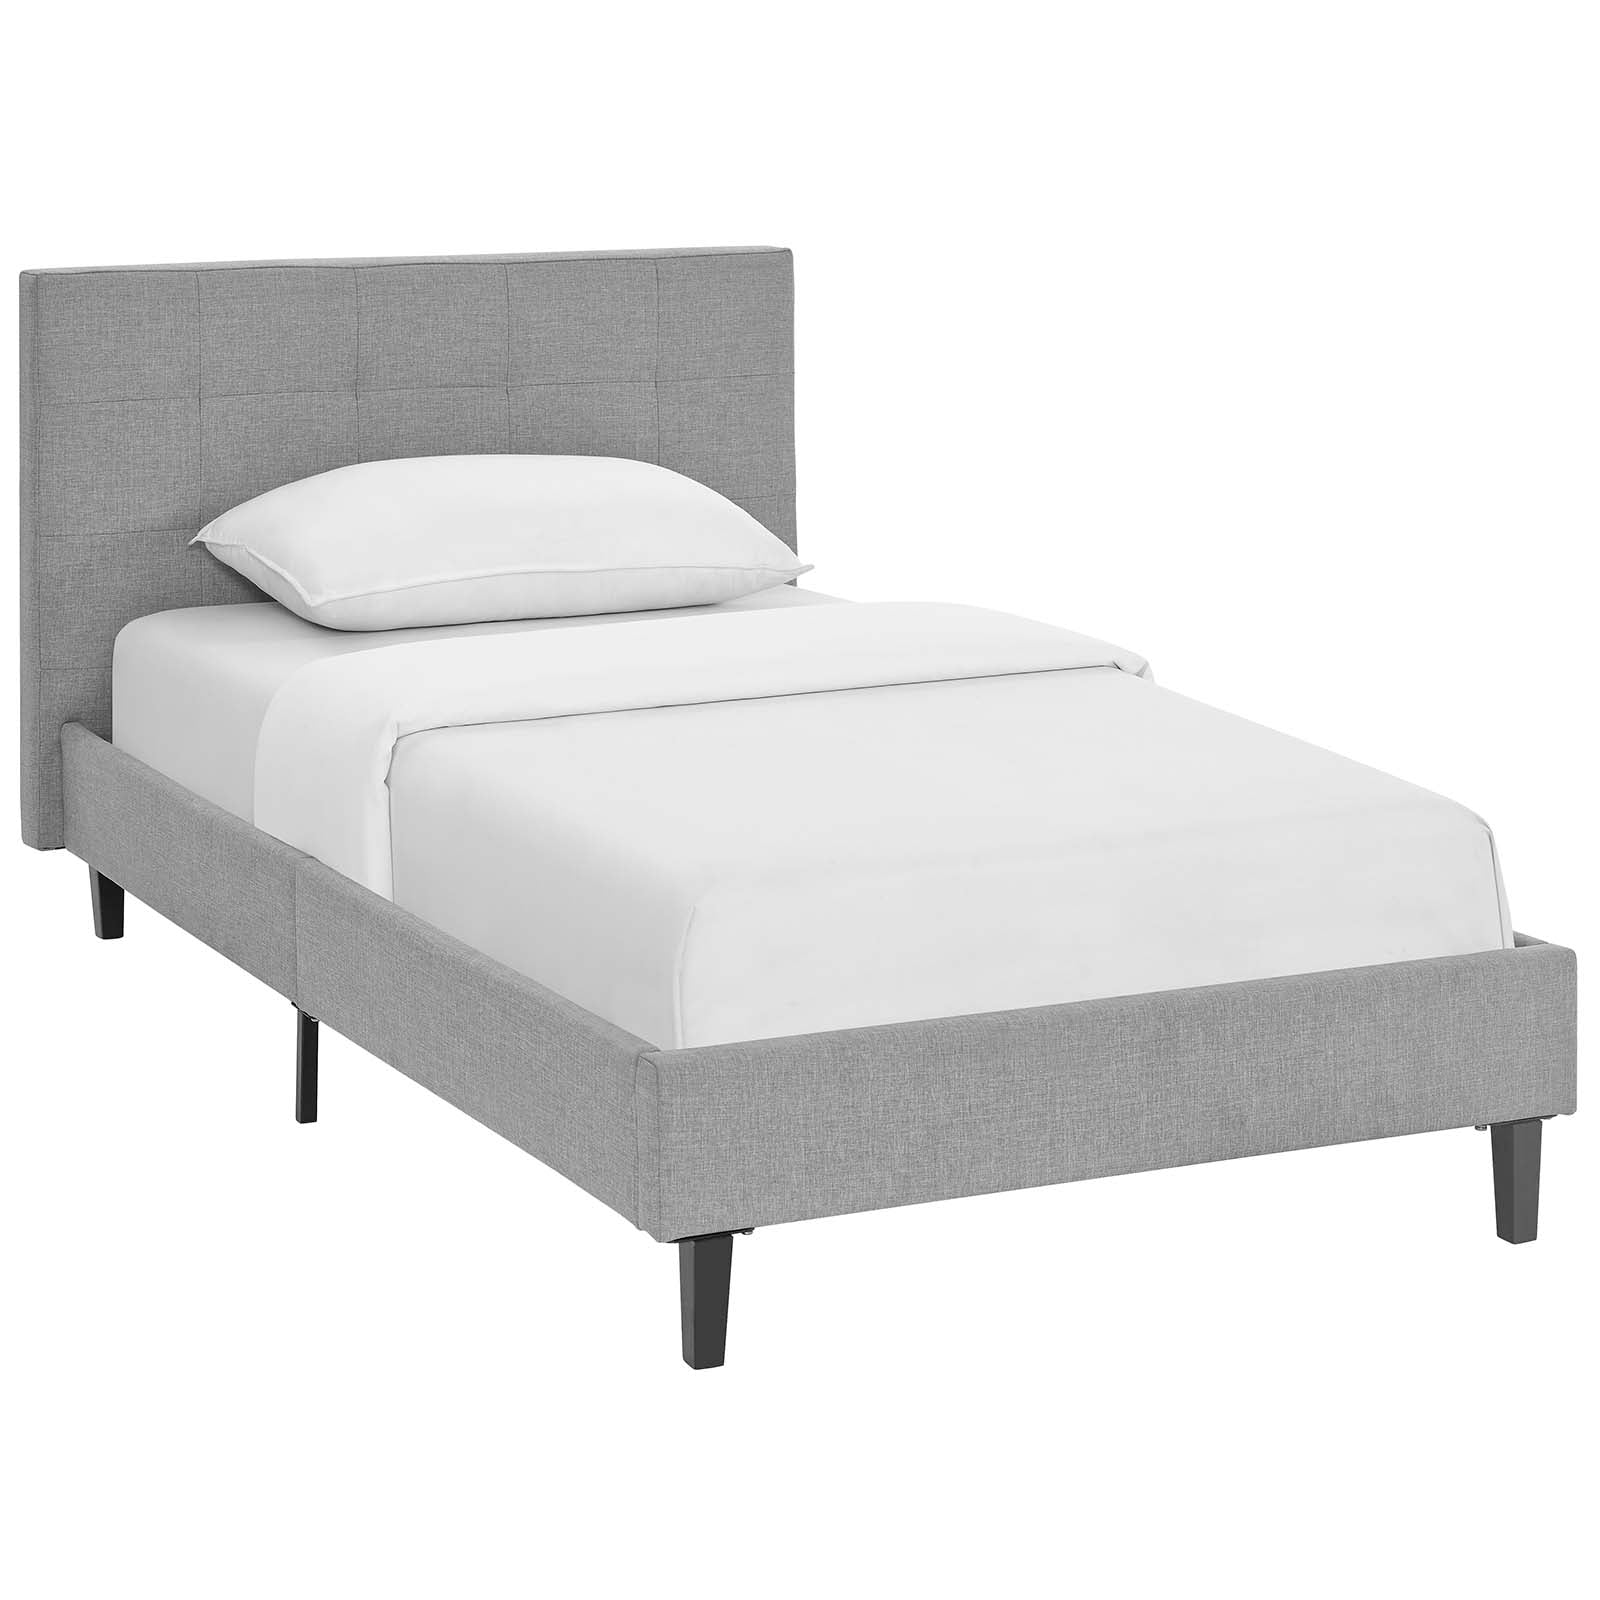 Modway Beds - Linnea Twin Bed Light Gray